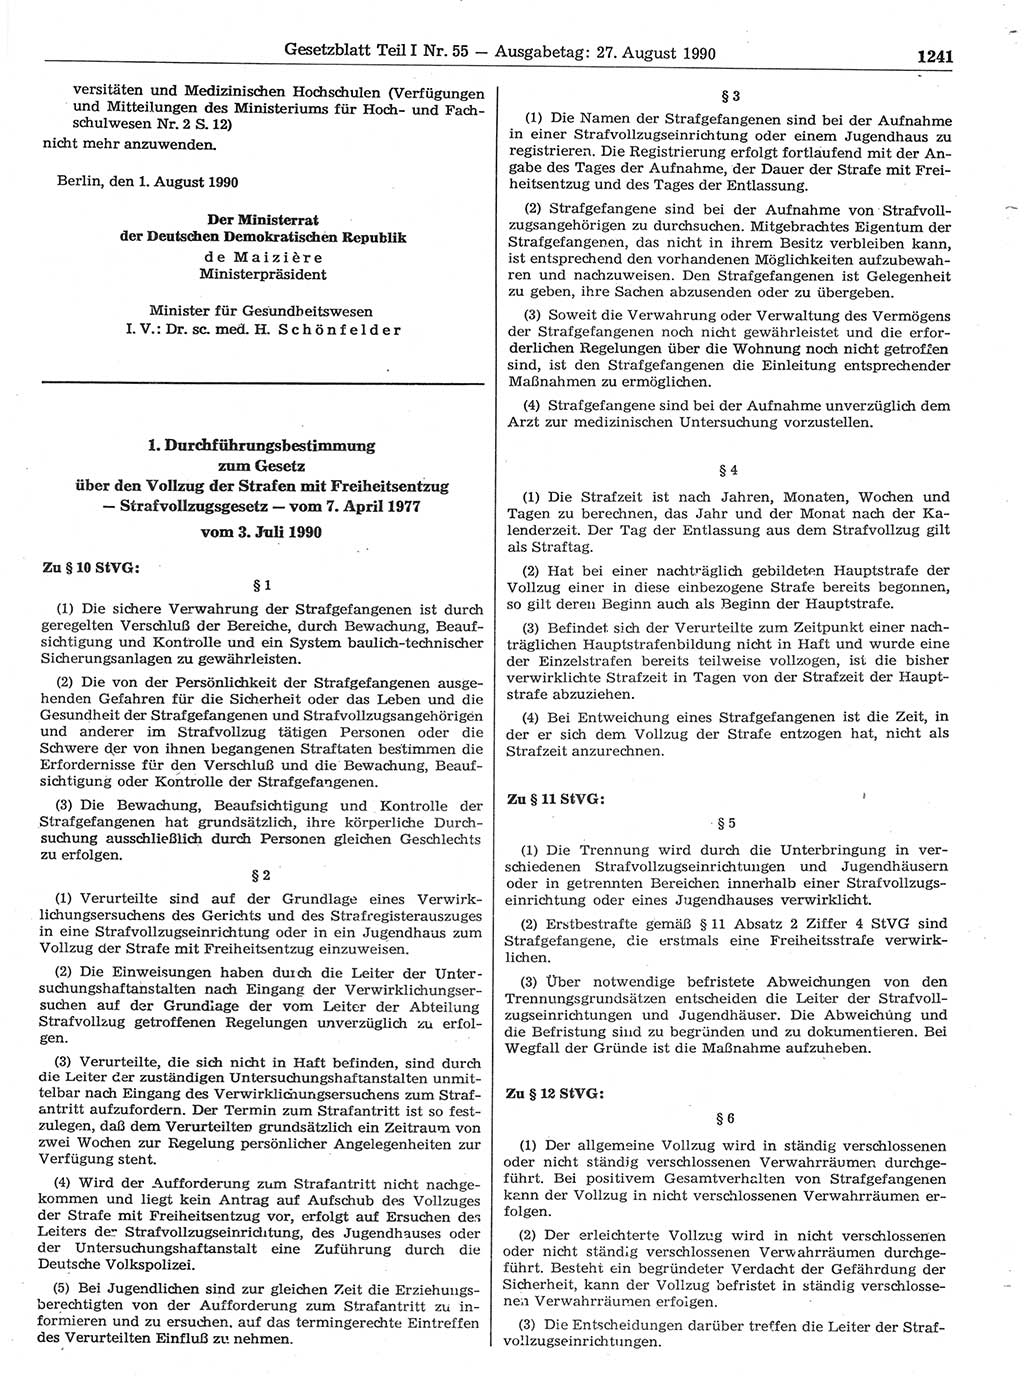 Gesetzblatt (GBl.) der Deutschen Demokratischen Republik (DDR) Teil Ⅰ 1990, Seite 1241 (GBl. DDR Ⅰ 1990, S. 1241)